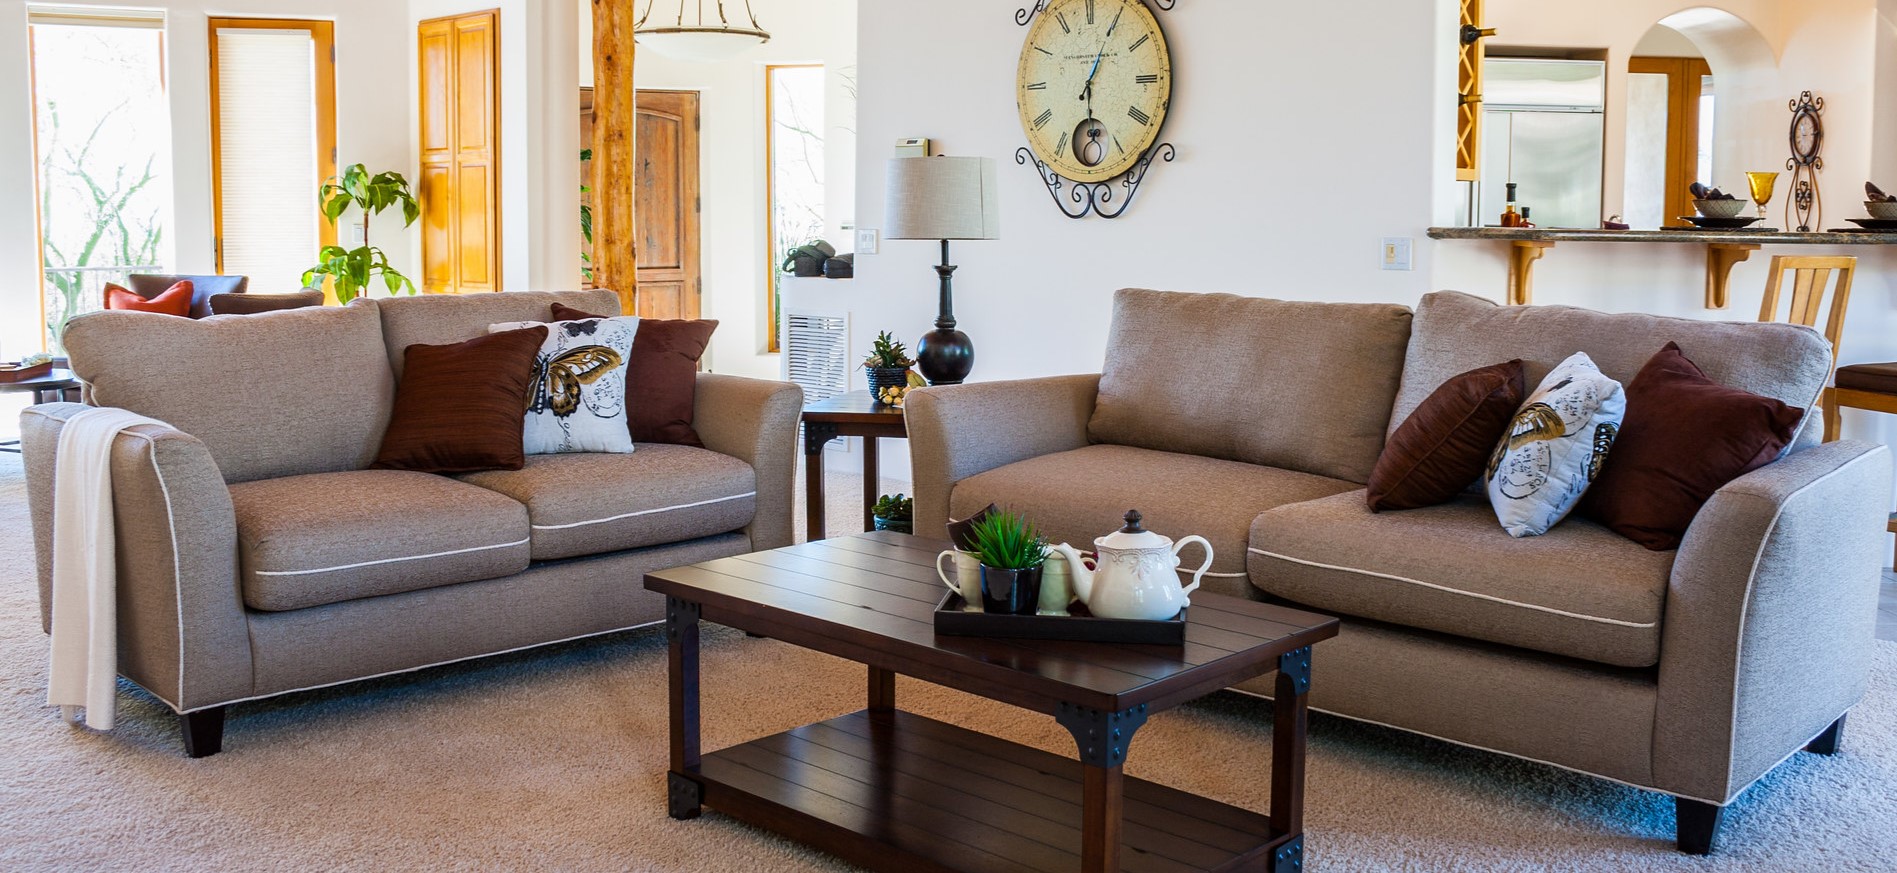 С помощью двух диванов можно создать удобную зону отдыха в гостиной